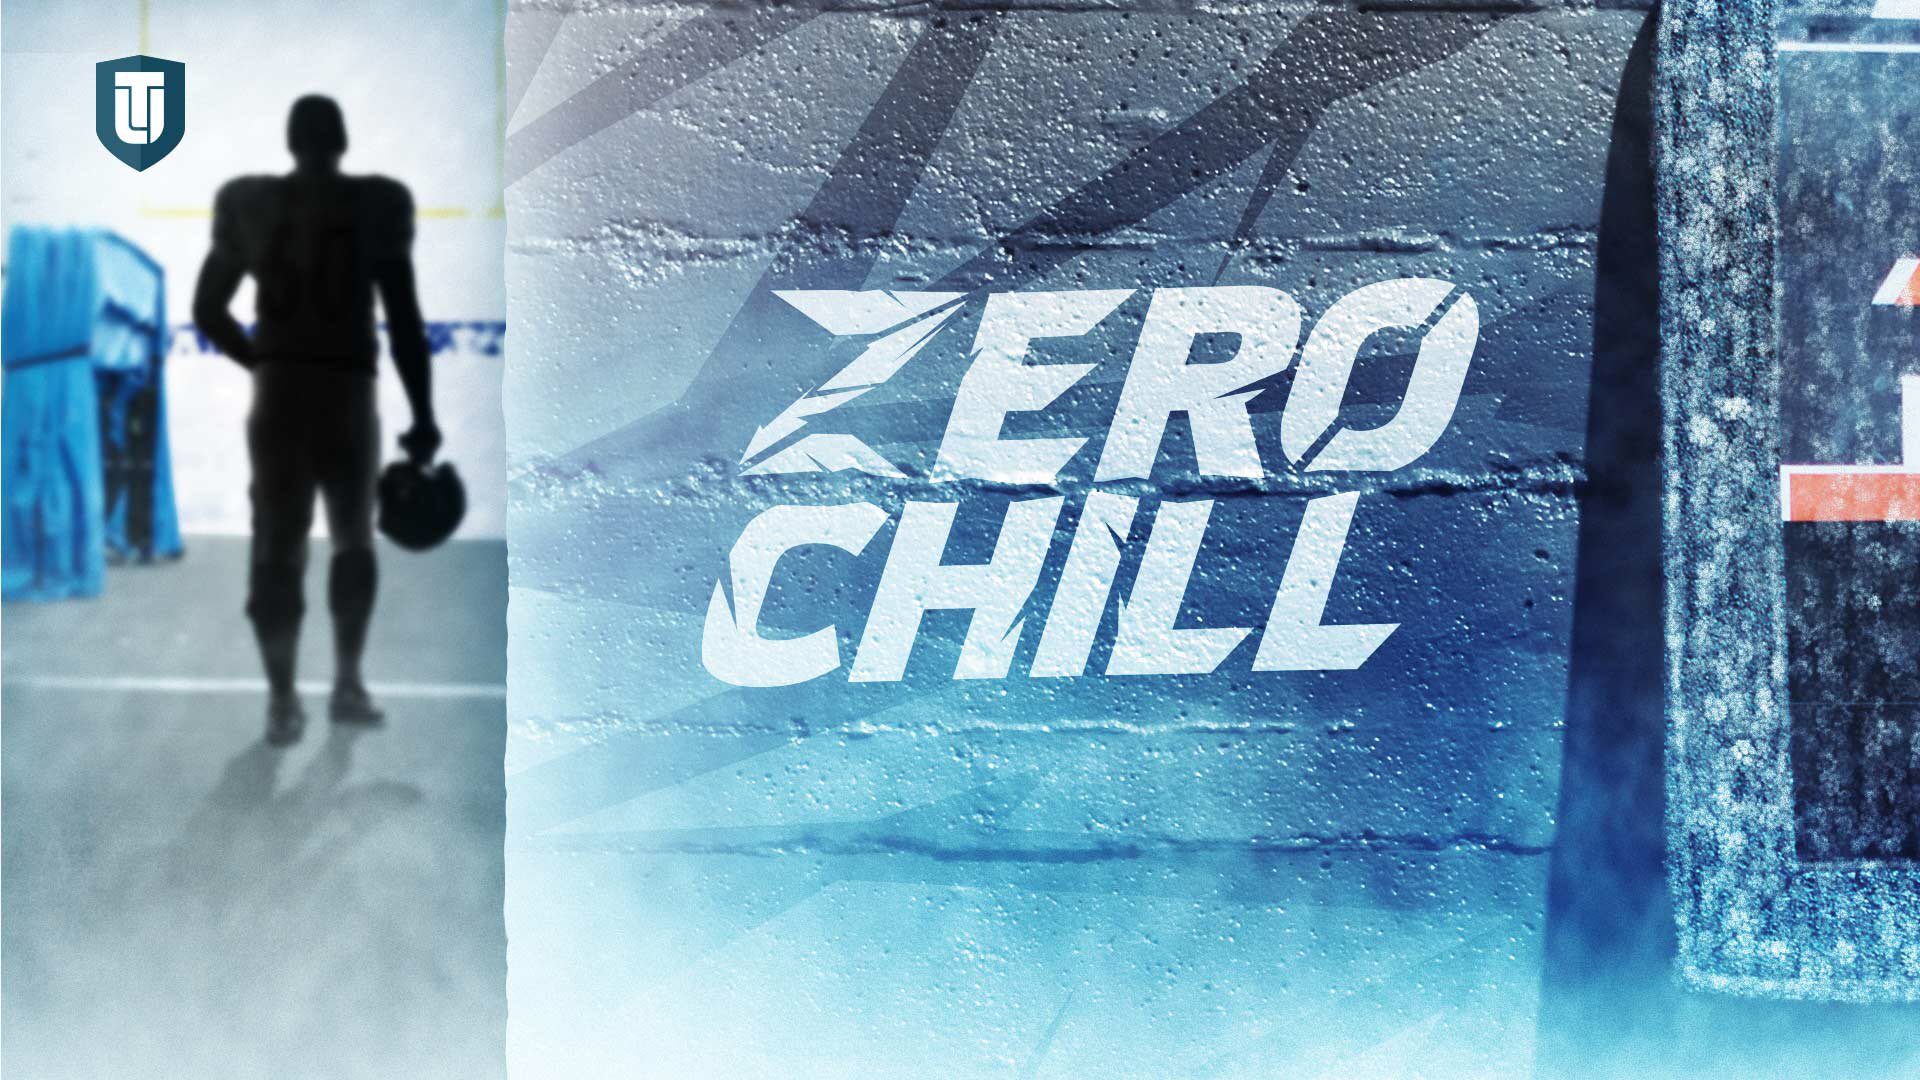 Zero Chill Mac. Freeze Startup. Don't Freeze Startup. Zero chill